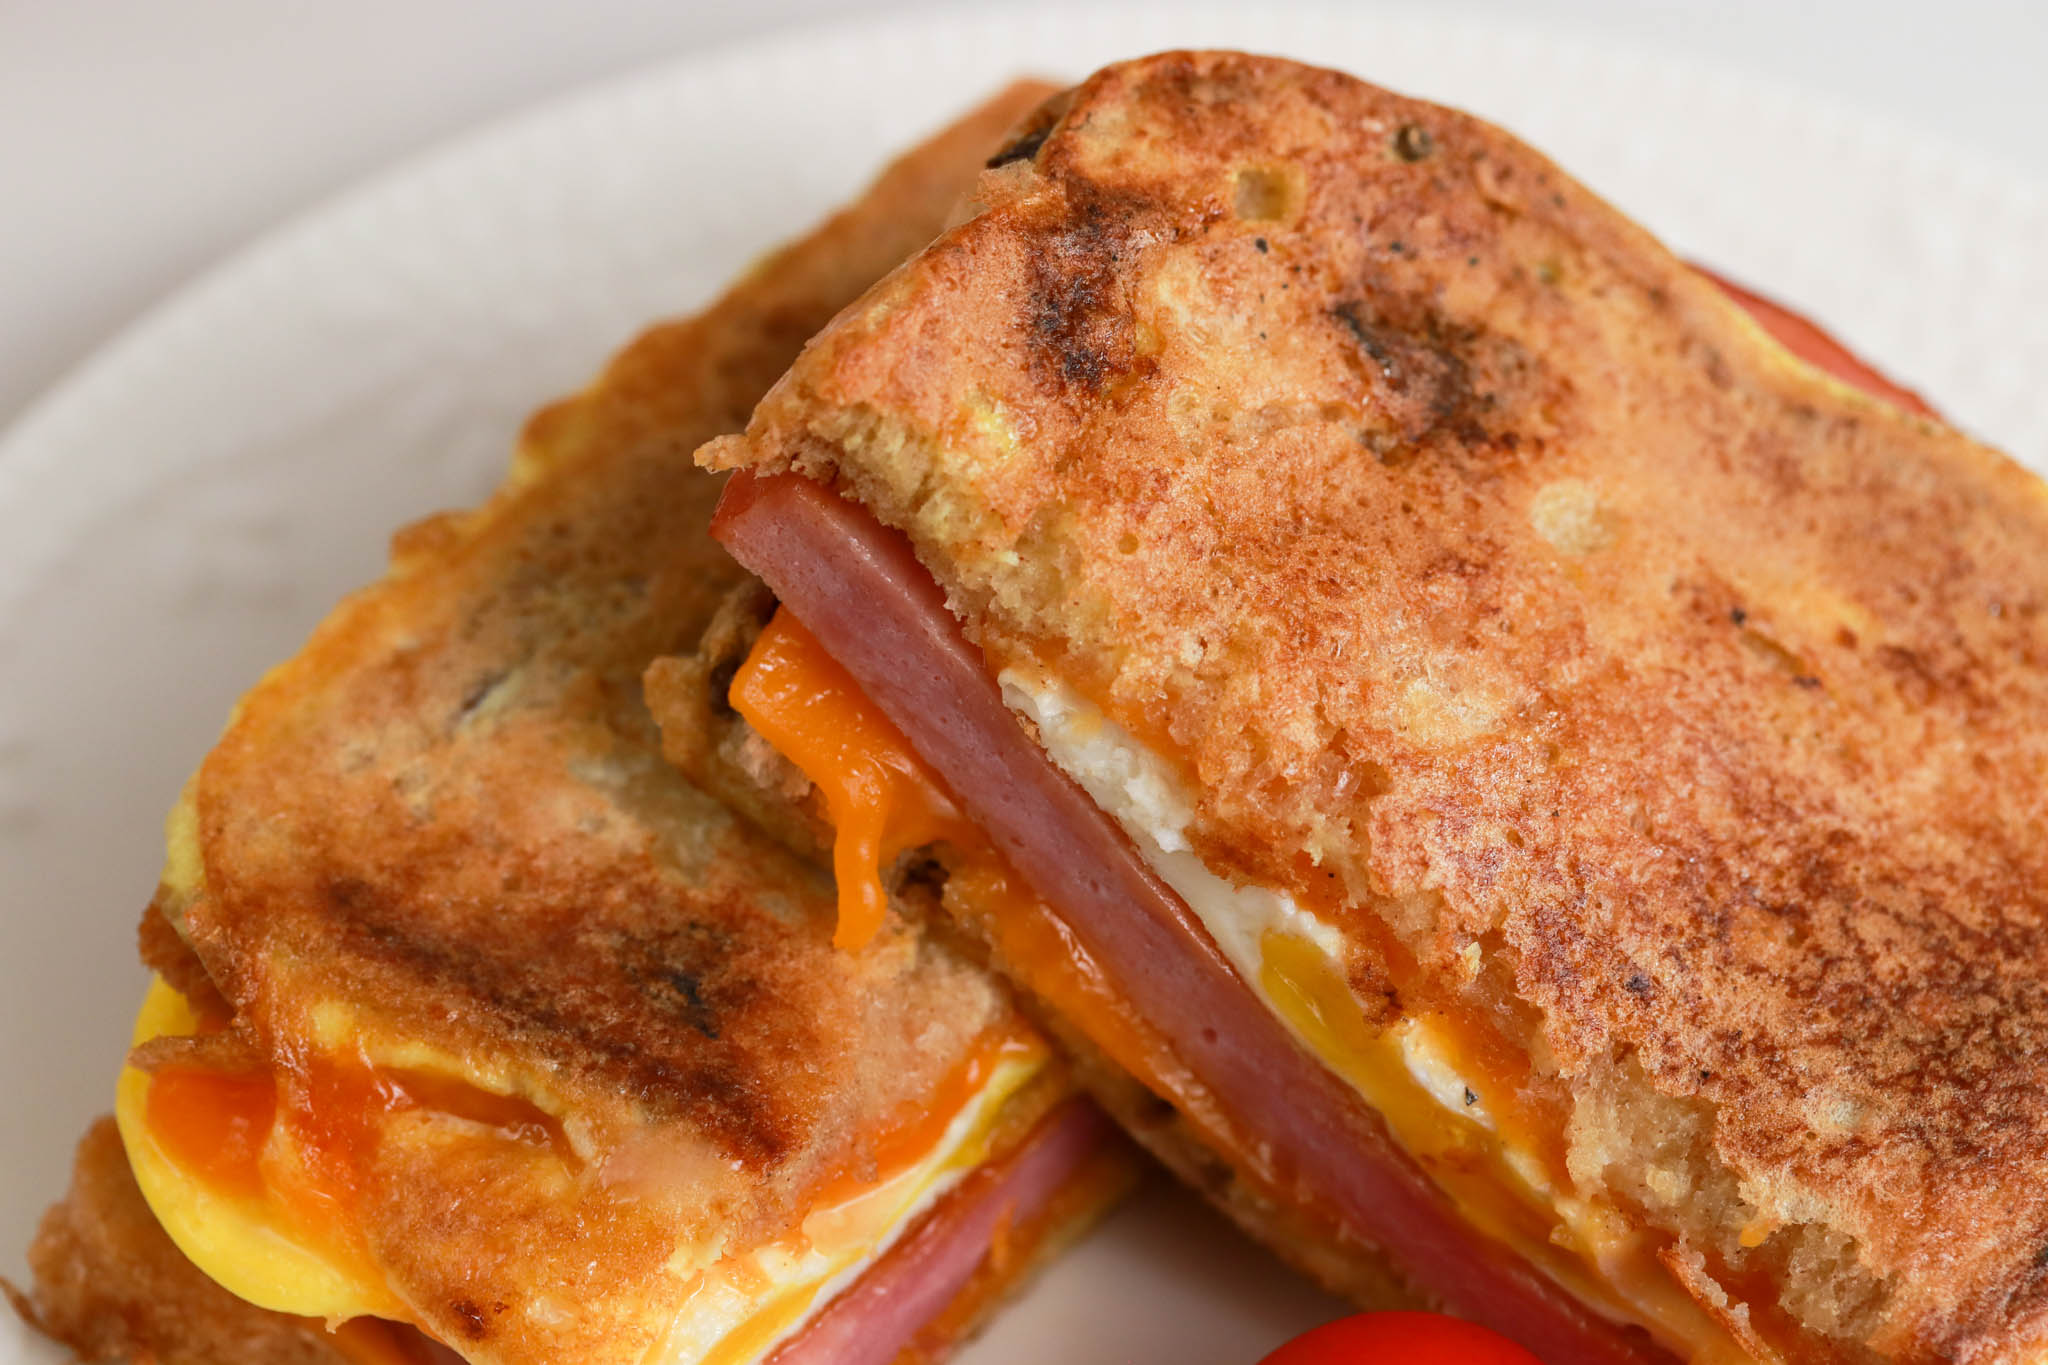 Gluten-free Cinnamon Raisin Breakfast Sandwich